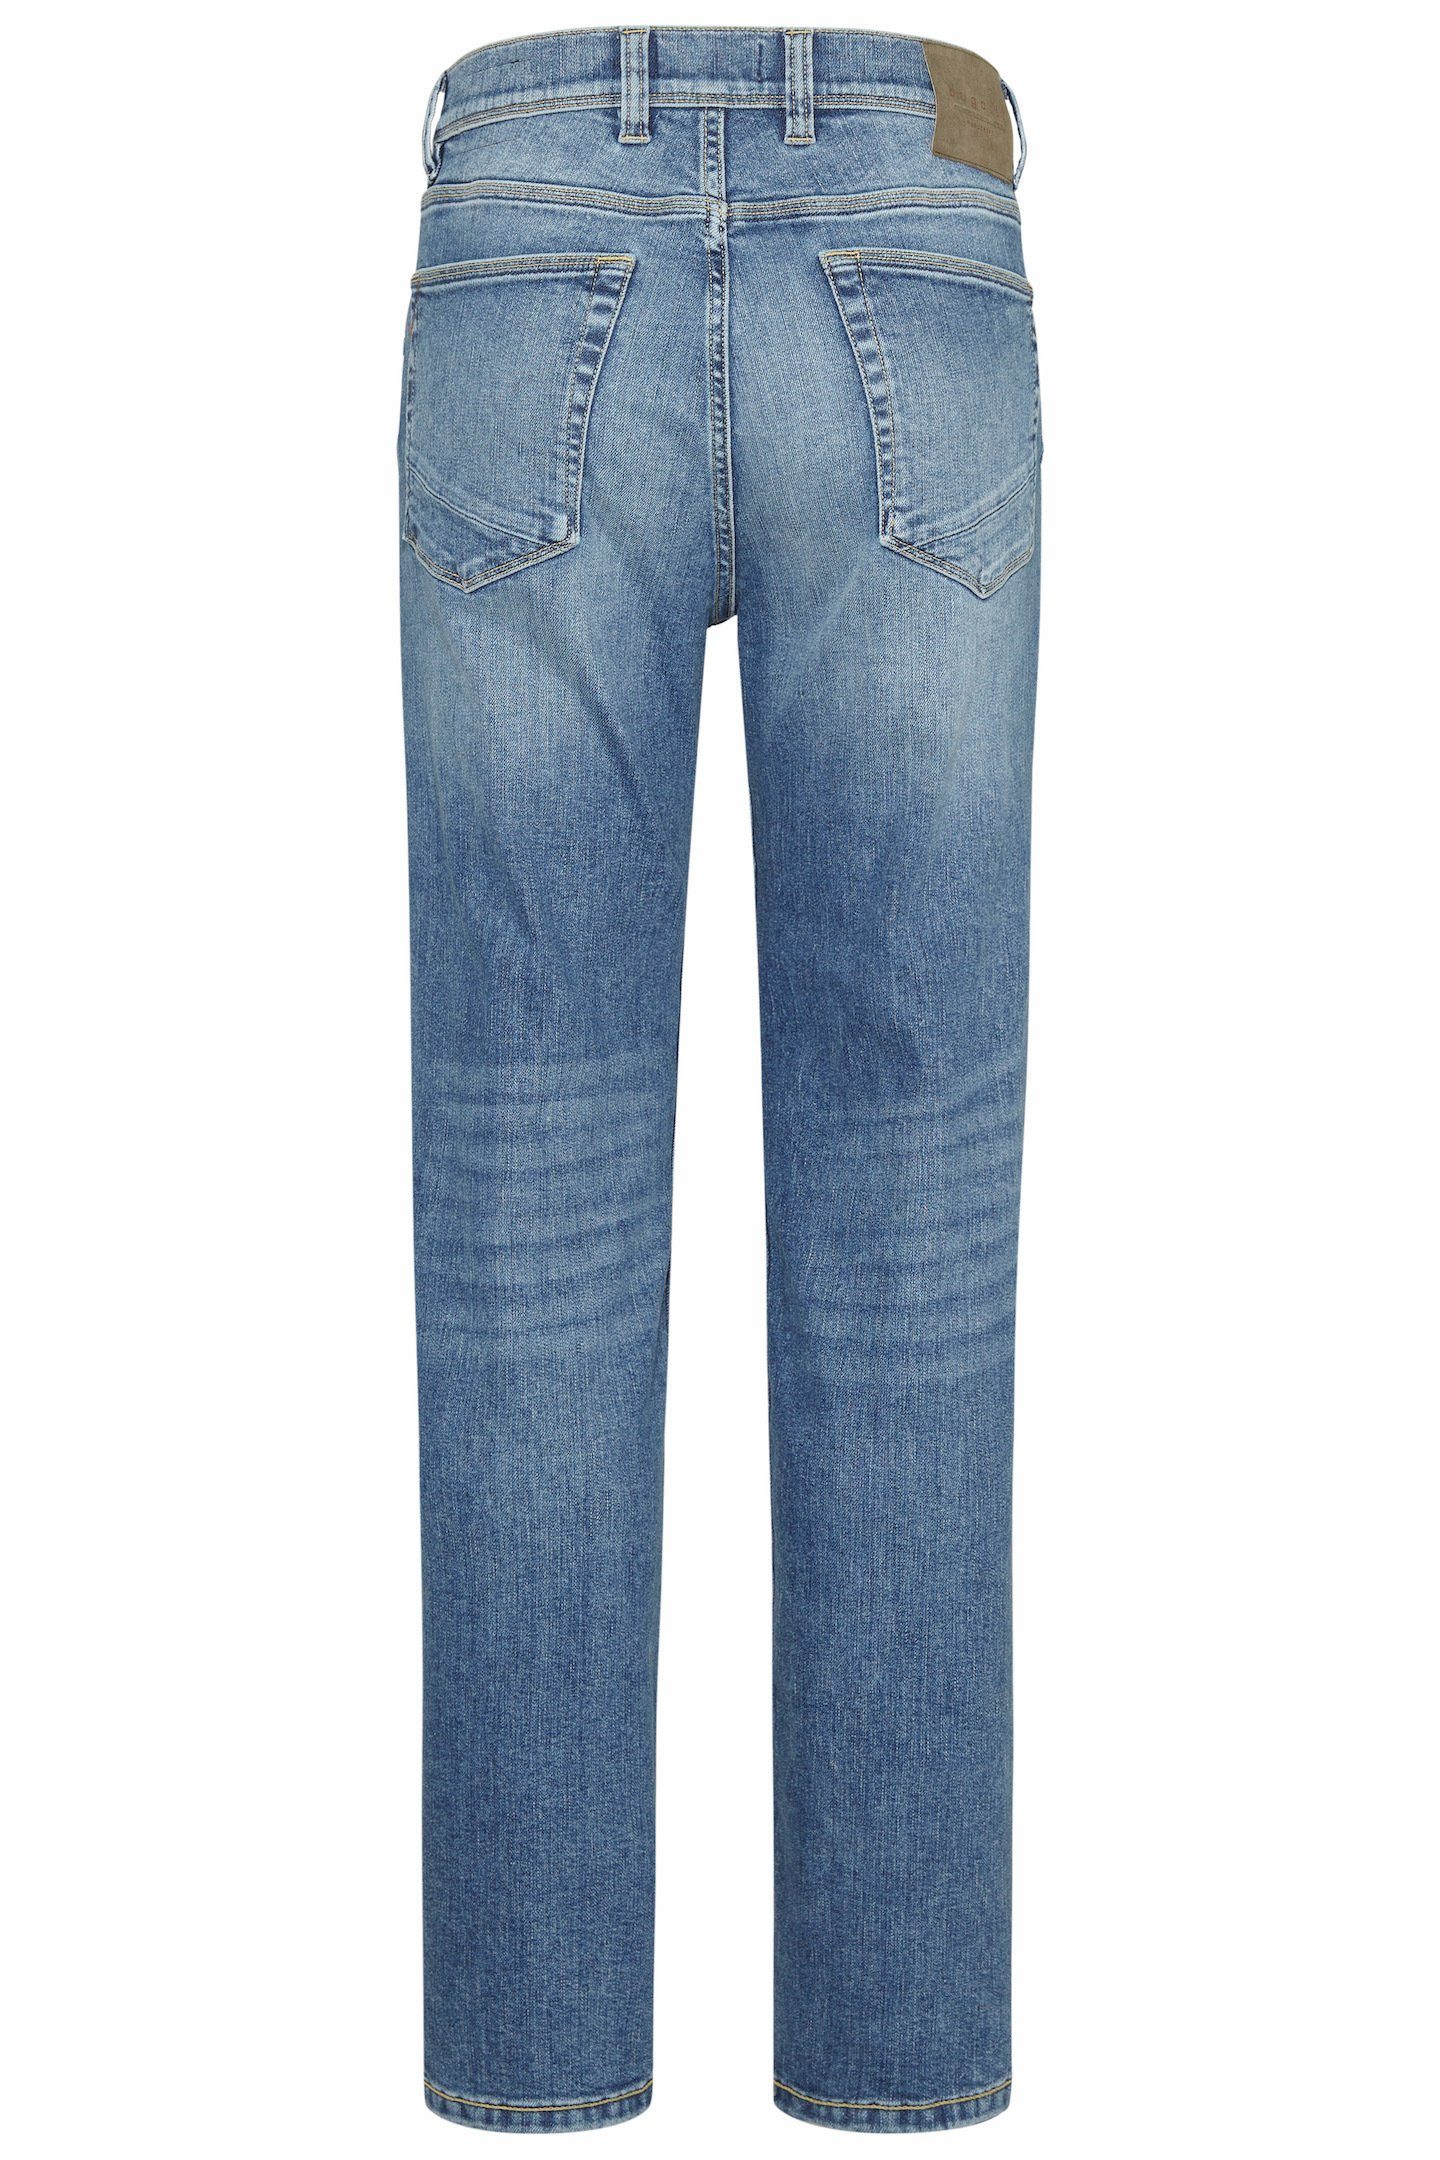 bugatti 5-Pocket-Jeans im Used Look Wash blau